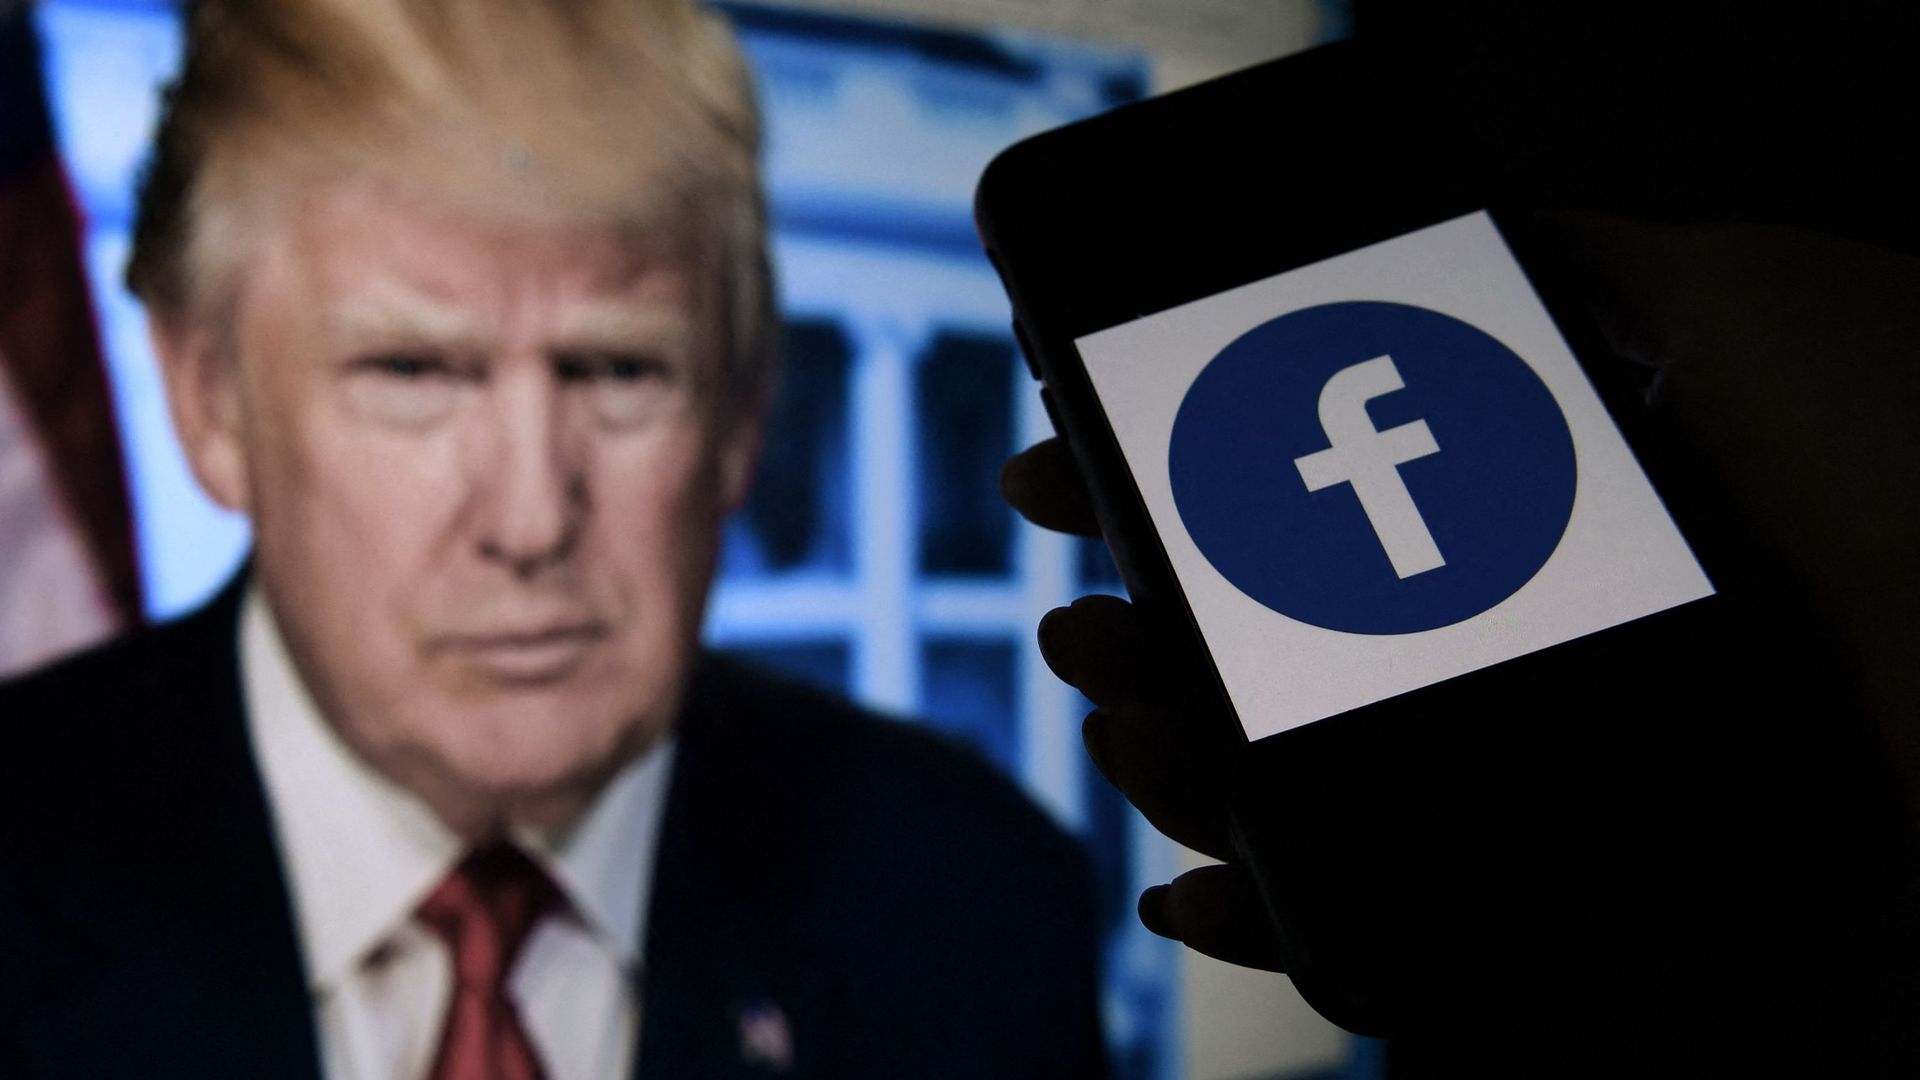 Le conseil de surveillance de Facebook maintient le bannissement de Donald Trump du réseau social. Photo d’illustration